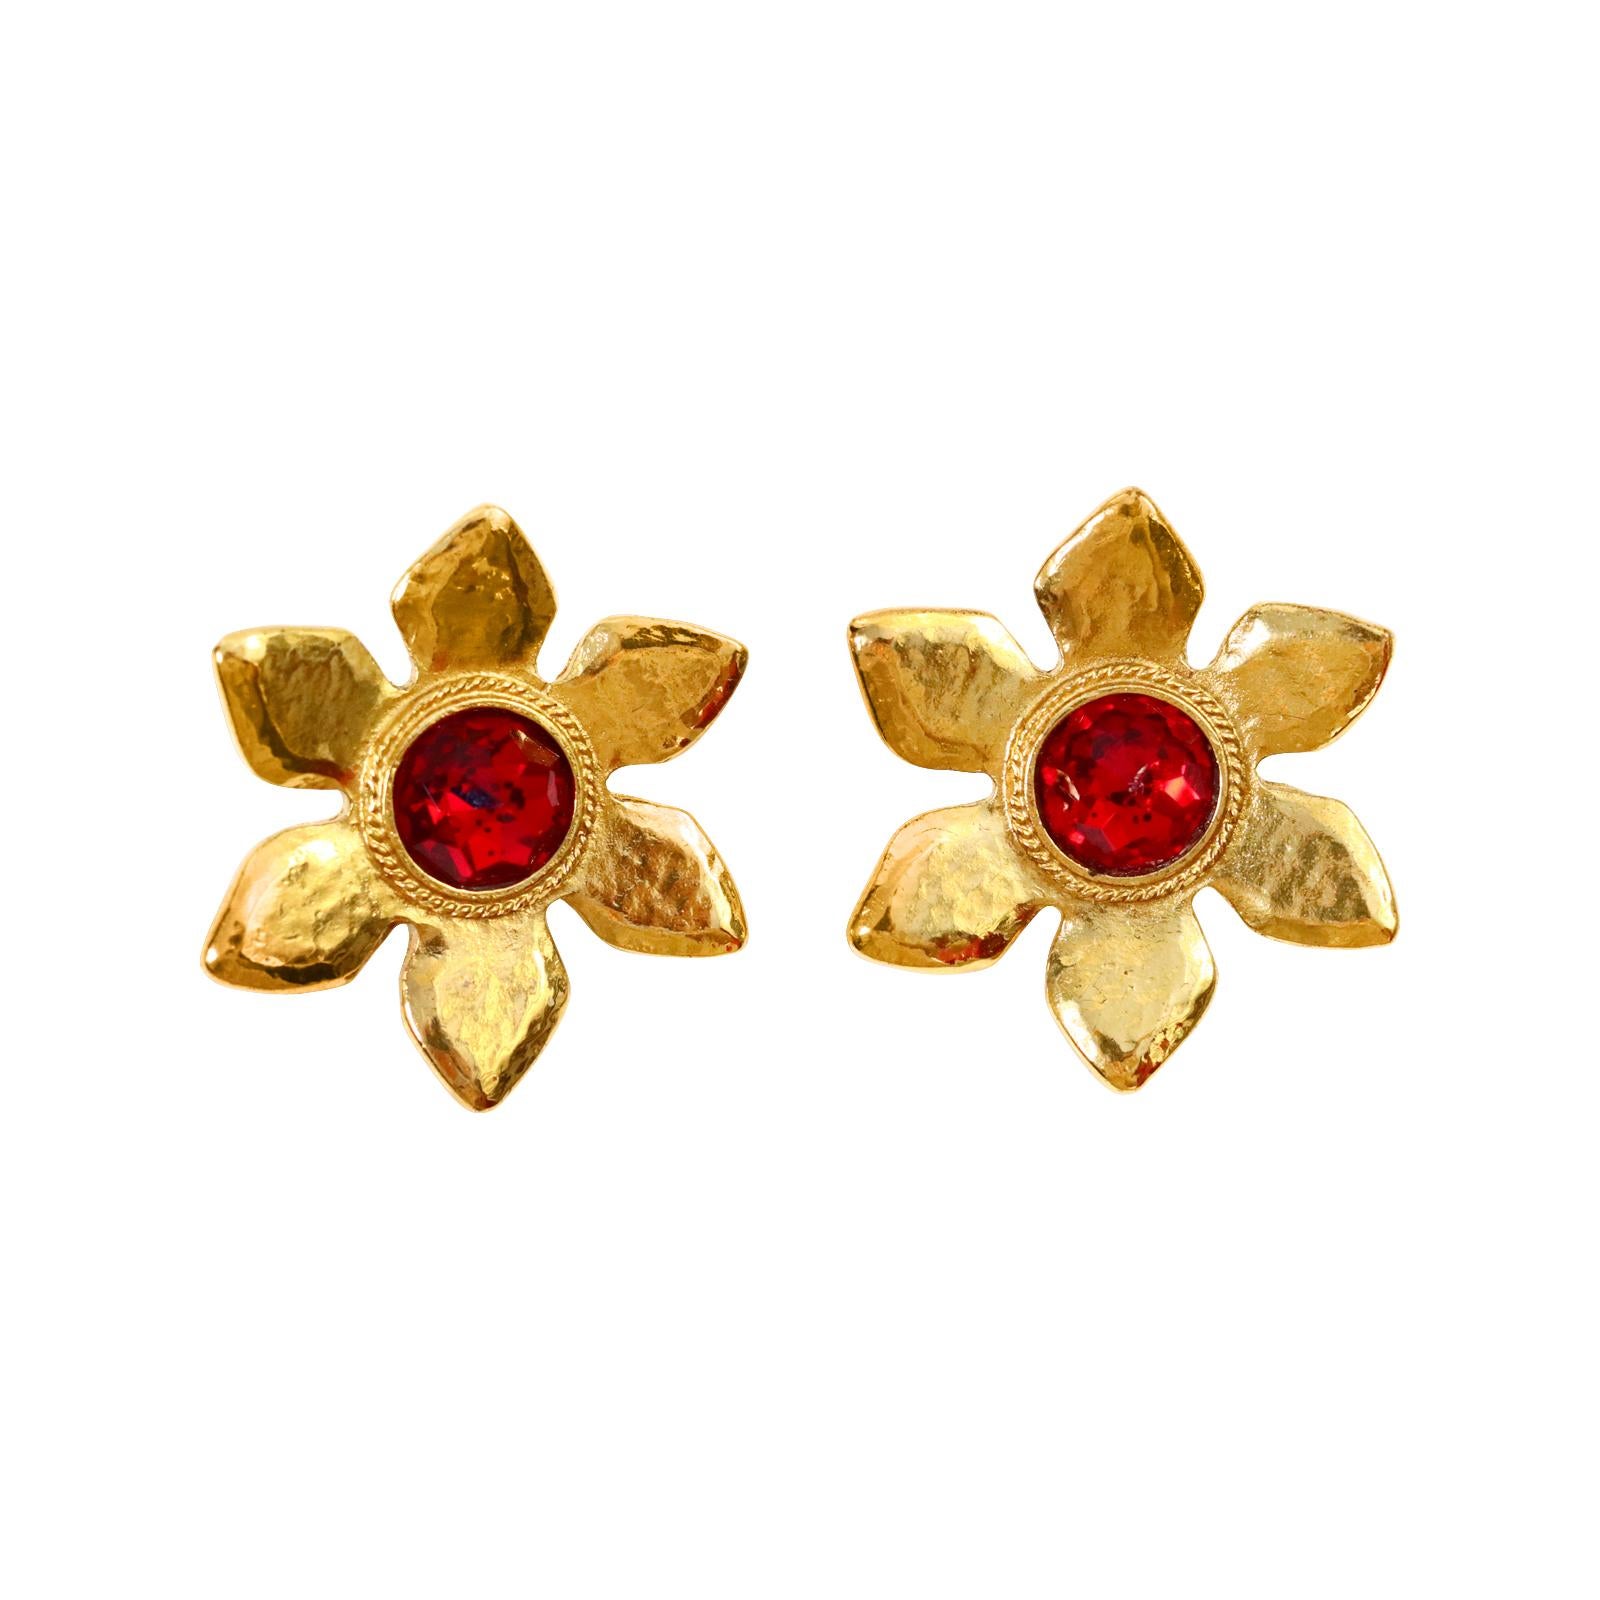 Vintage Yves Saint Laurent YSL Gold Blume mit roten Zentrum Ohrringe CIRCA 1980s. Diese werden nie aus der Mode kommen und jeder wird wissen, was Sie tragen. Für mich bedeuten sie immer Glück.  Klassiker.
 Anklipsen